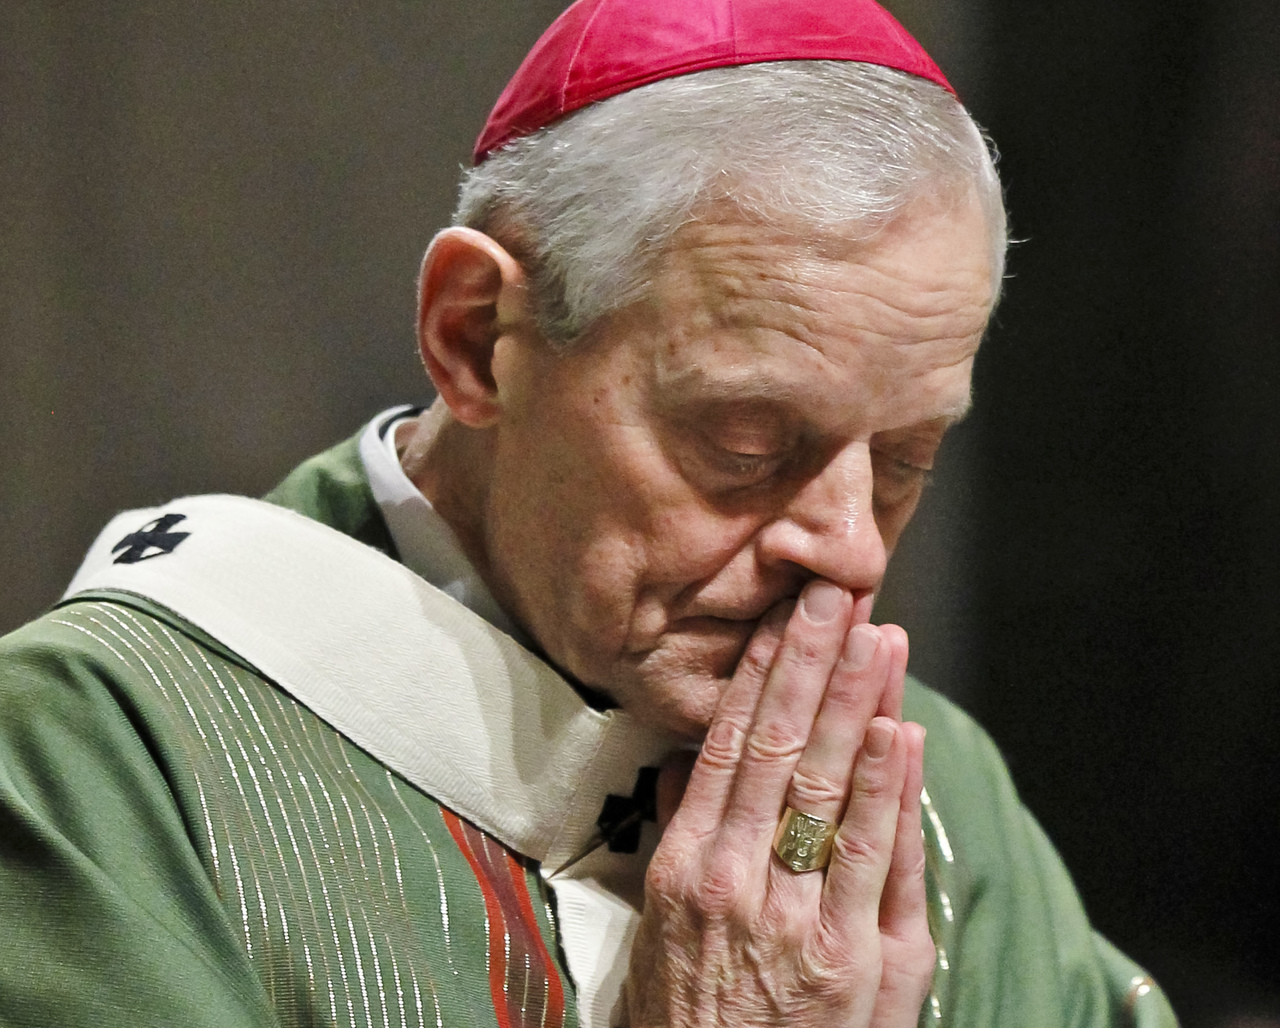 Renuncia. Hace 4 días, el Papa Francisco aceptó la renucia del cardenal Donald Wuerl, acusado de encubrir abusos. (AP)